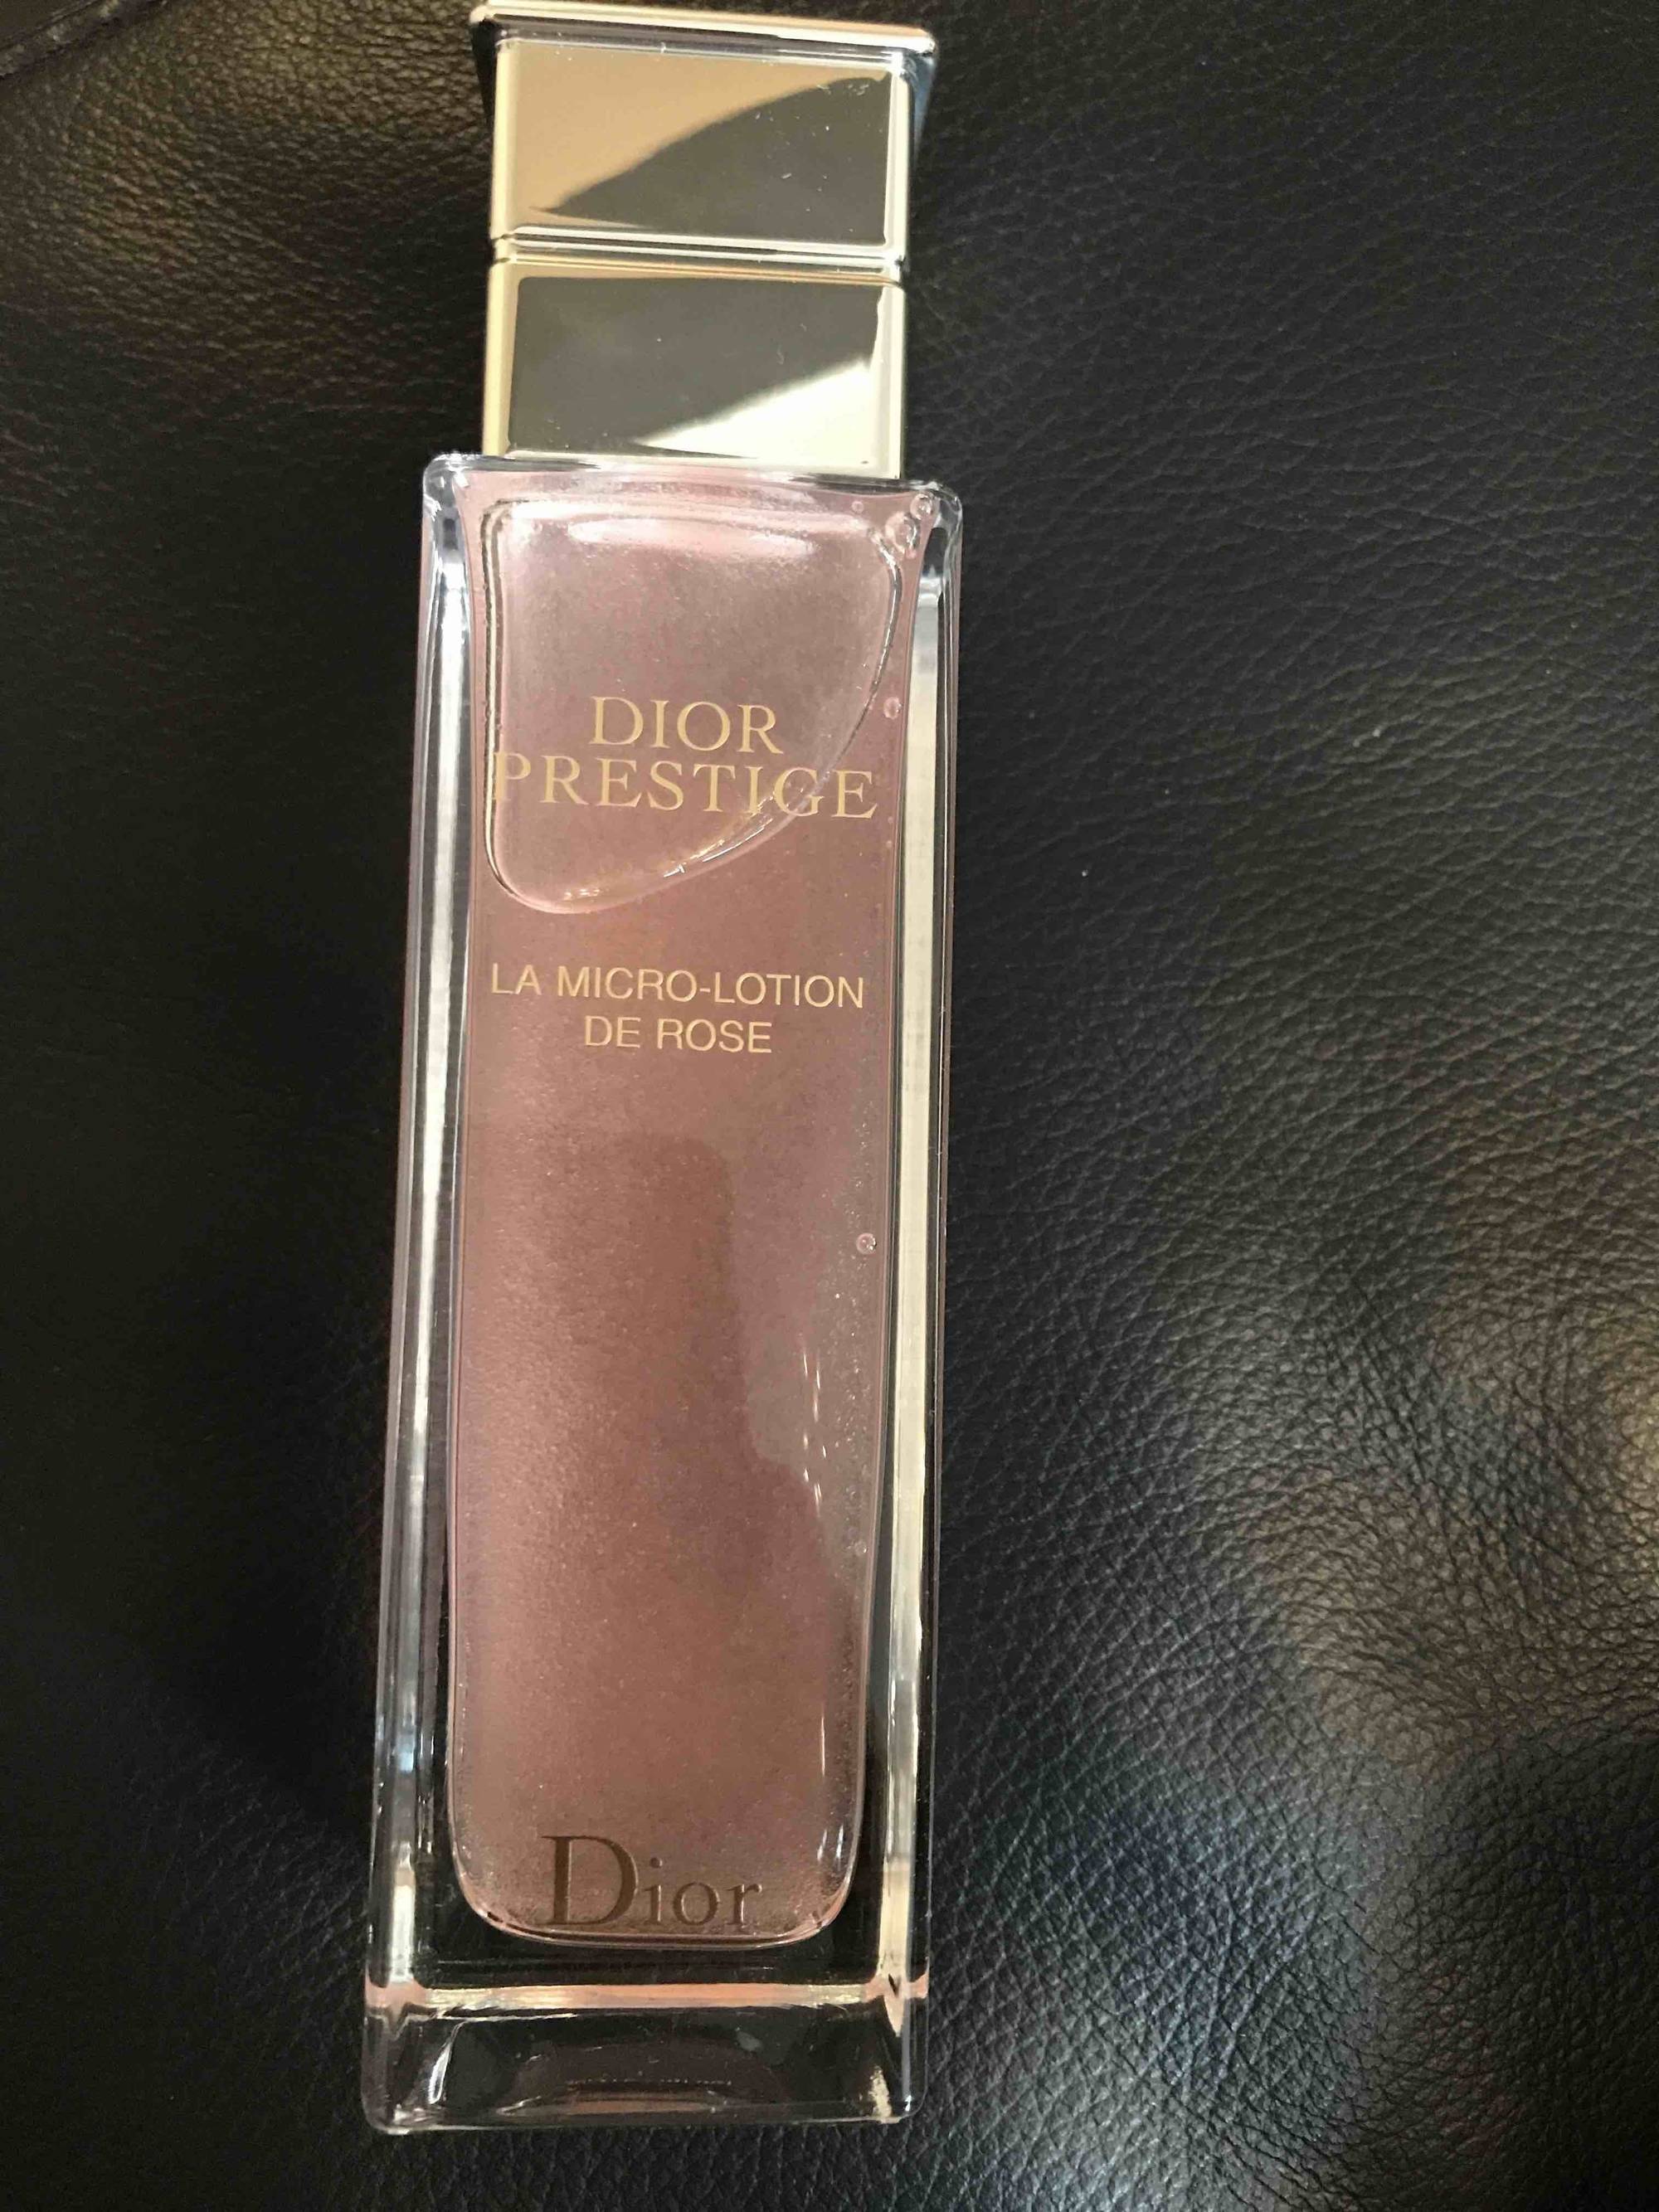 DIOR - Dior prestige - La micro-lotion de rose